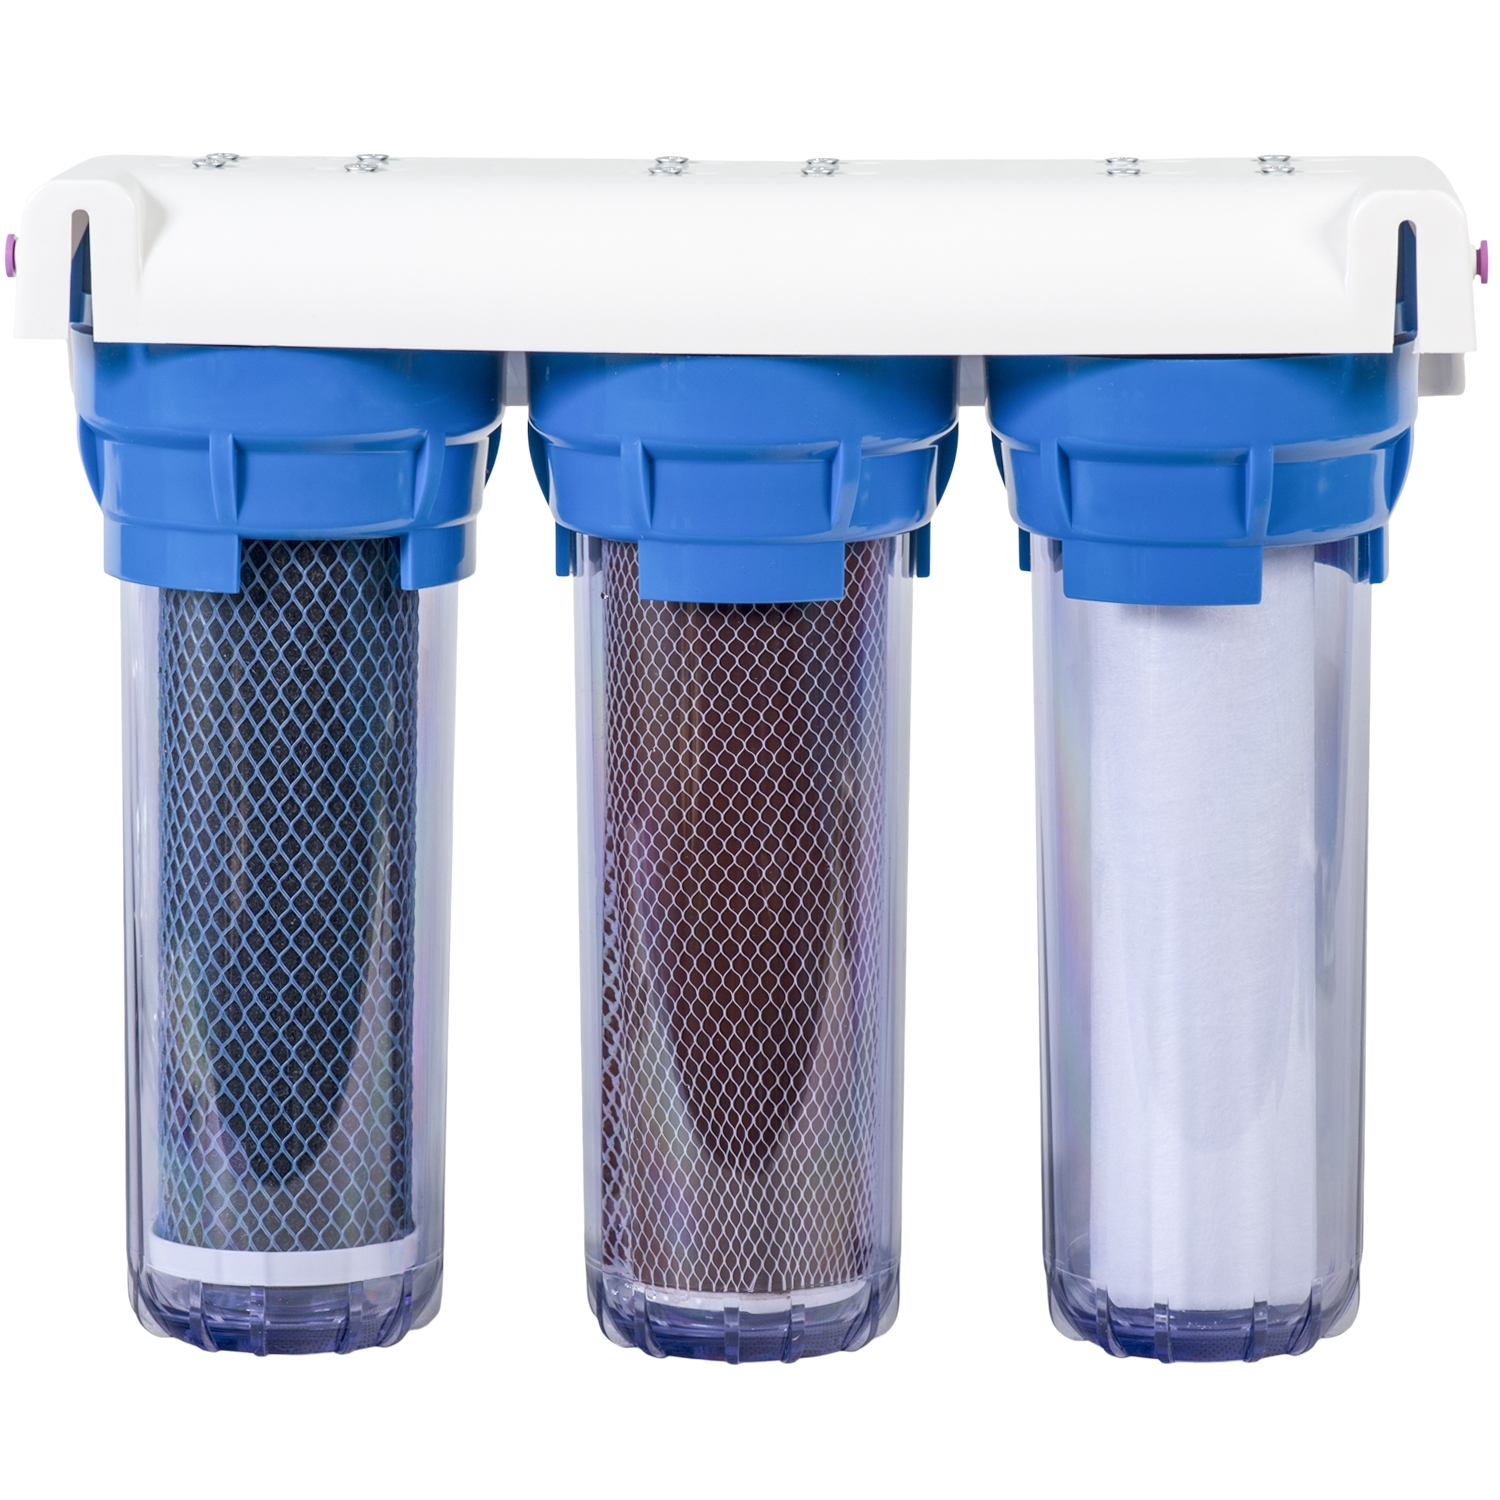 Фильтры для воды тольятти. Проточный фильтр для воды АКВАКИТ. Проточный фильтр для воды 1/2 Гейзер. Фильтр для воды проточный магистральный Гейзер. BWT фильтры для воды.